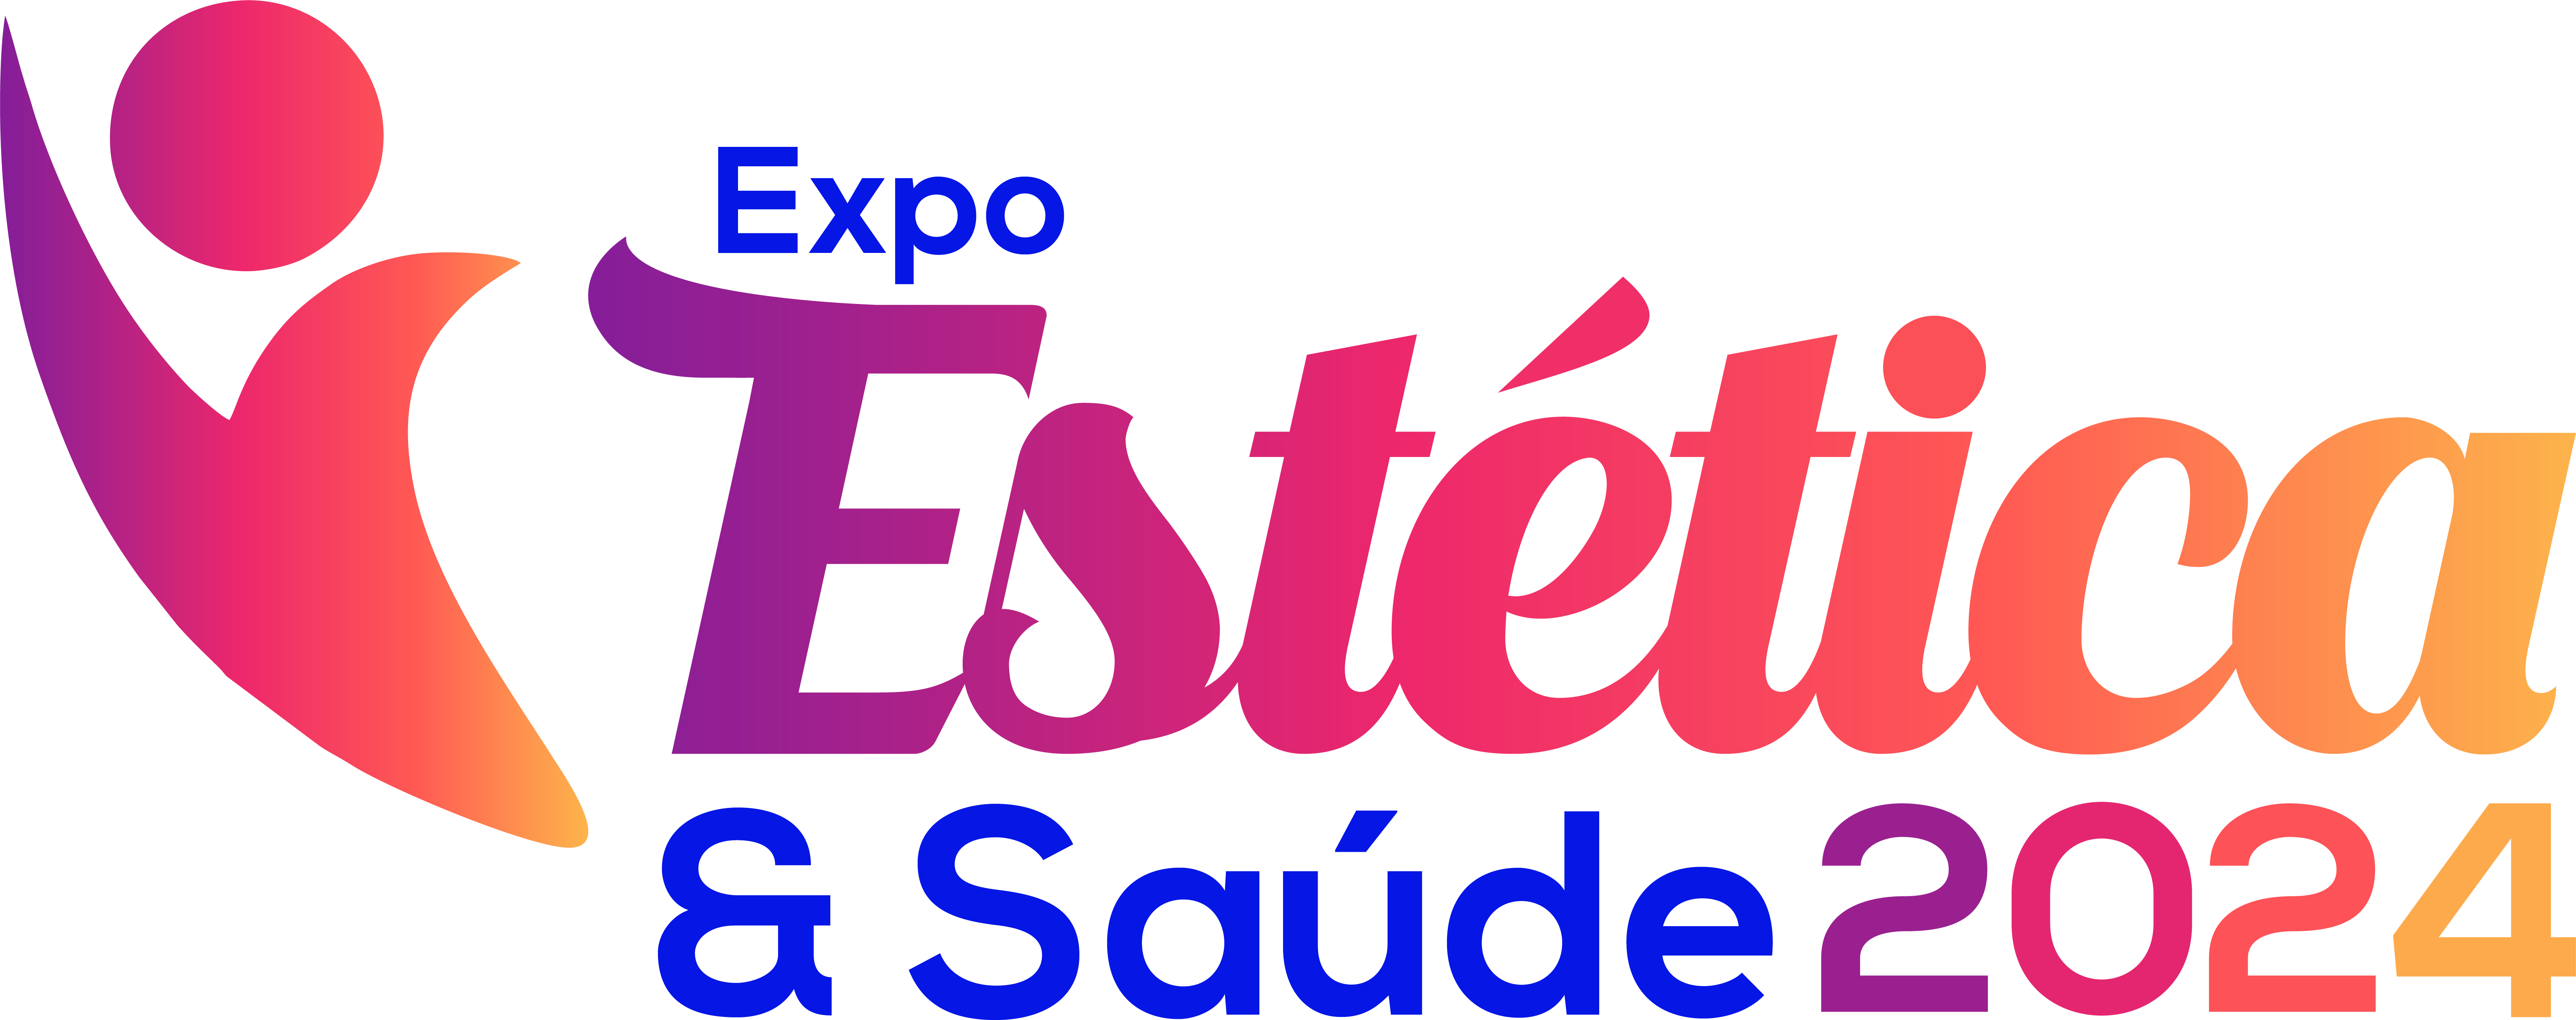 Expo Estética e Saúde